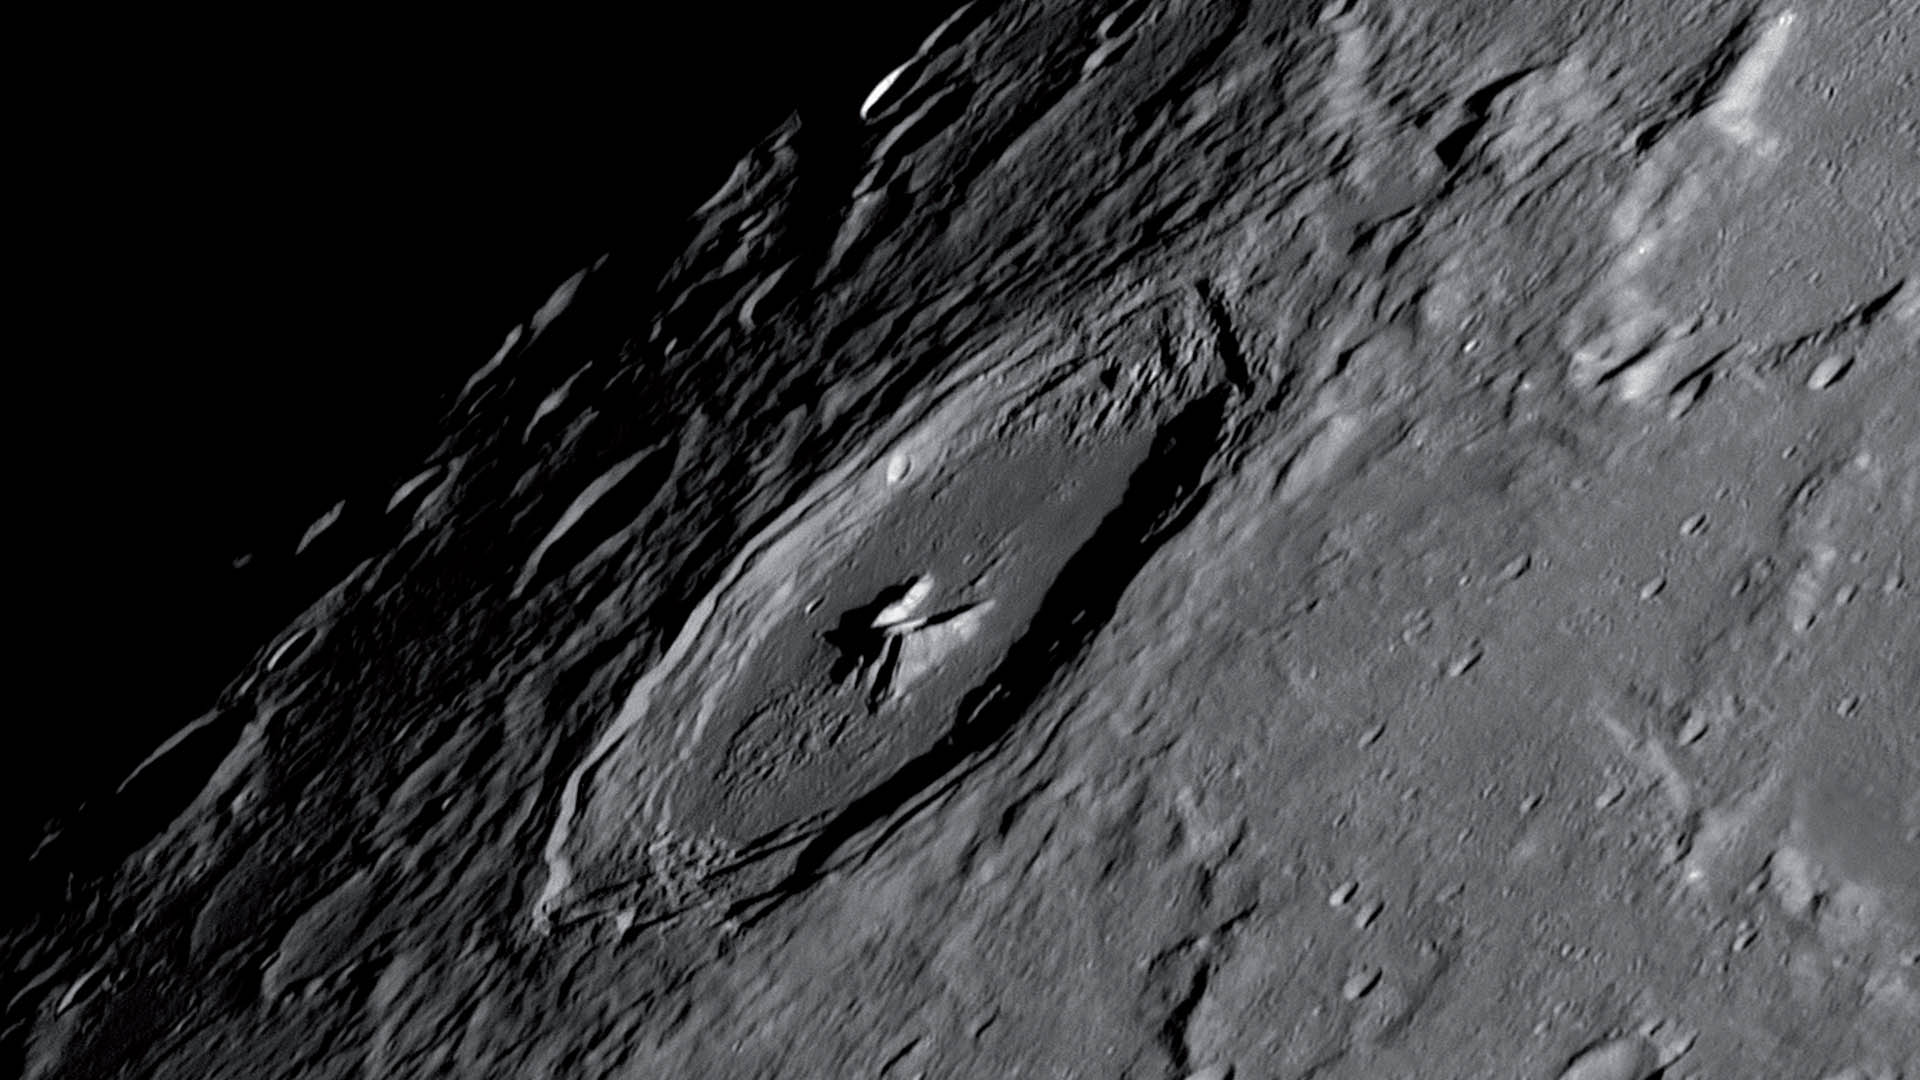 Imagens detalhadas da lua e outros com lucky imaging